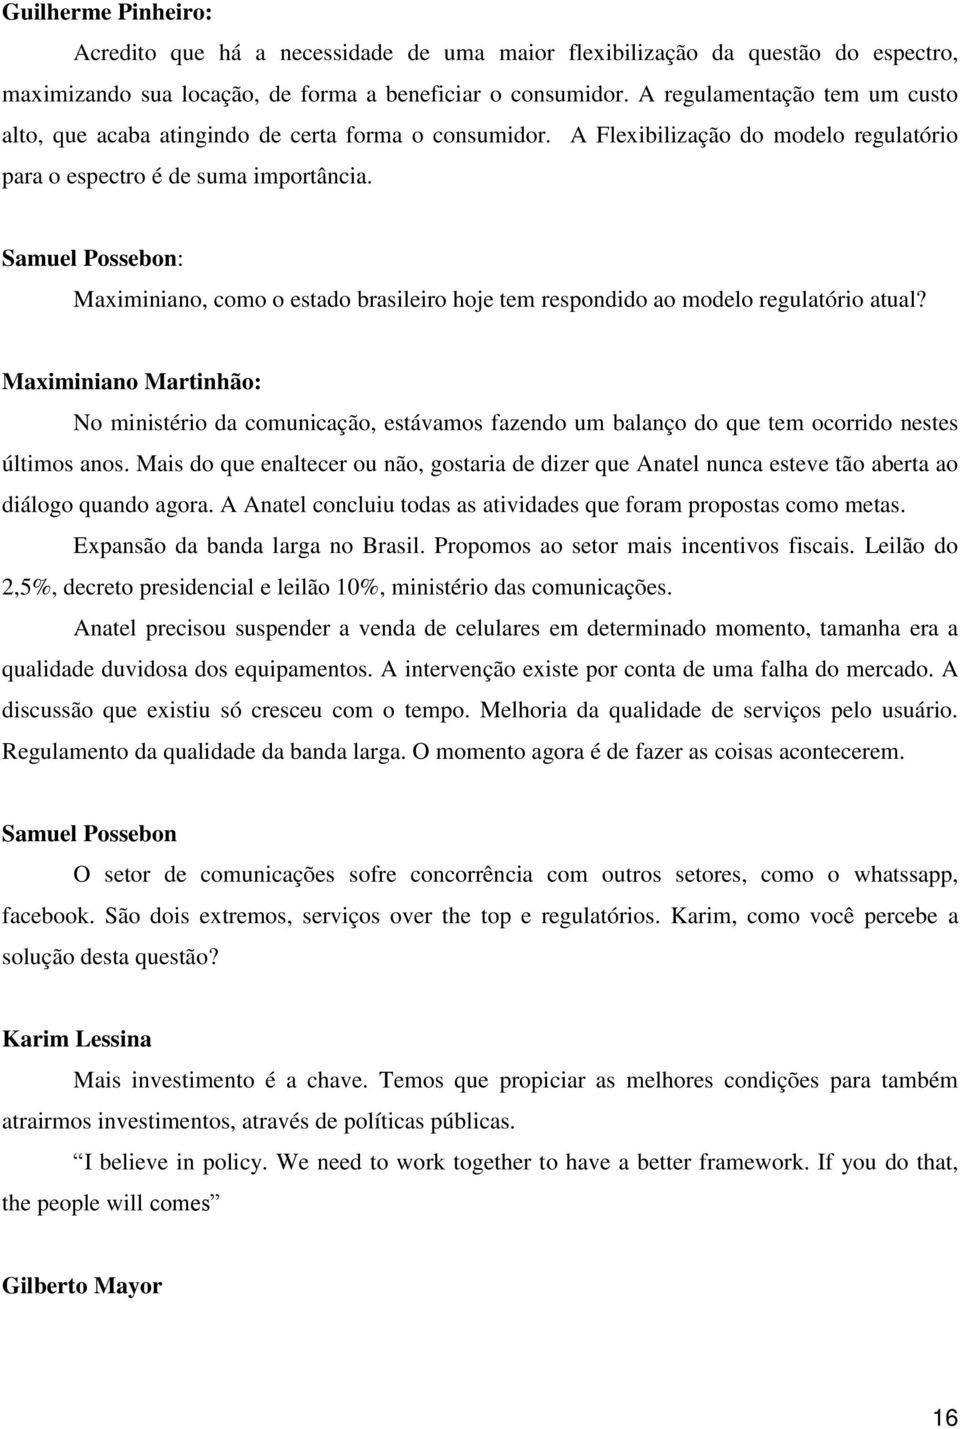 Samuel Possebon: Maximiniano, como o estado brasileiro hoje tem respondido ao modelo regulatório atual?